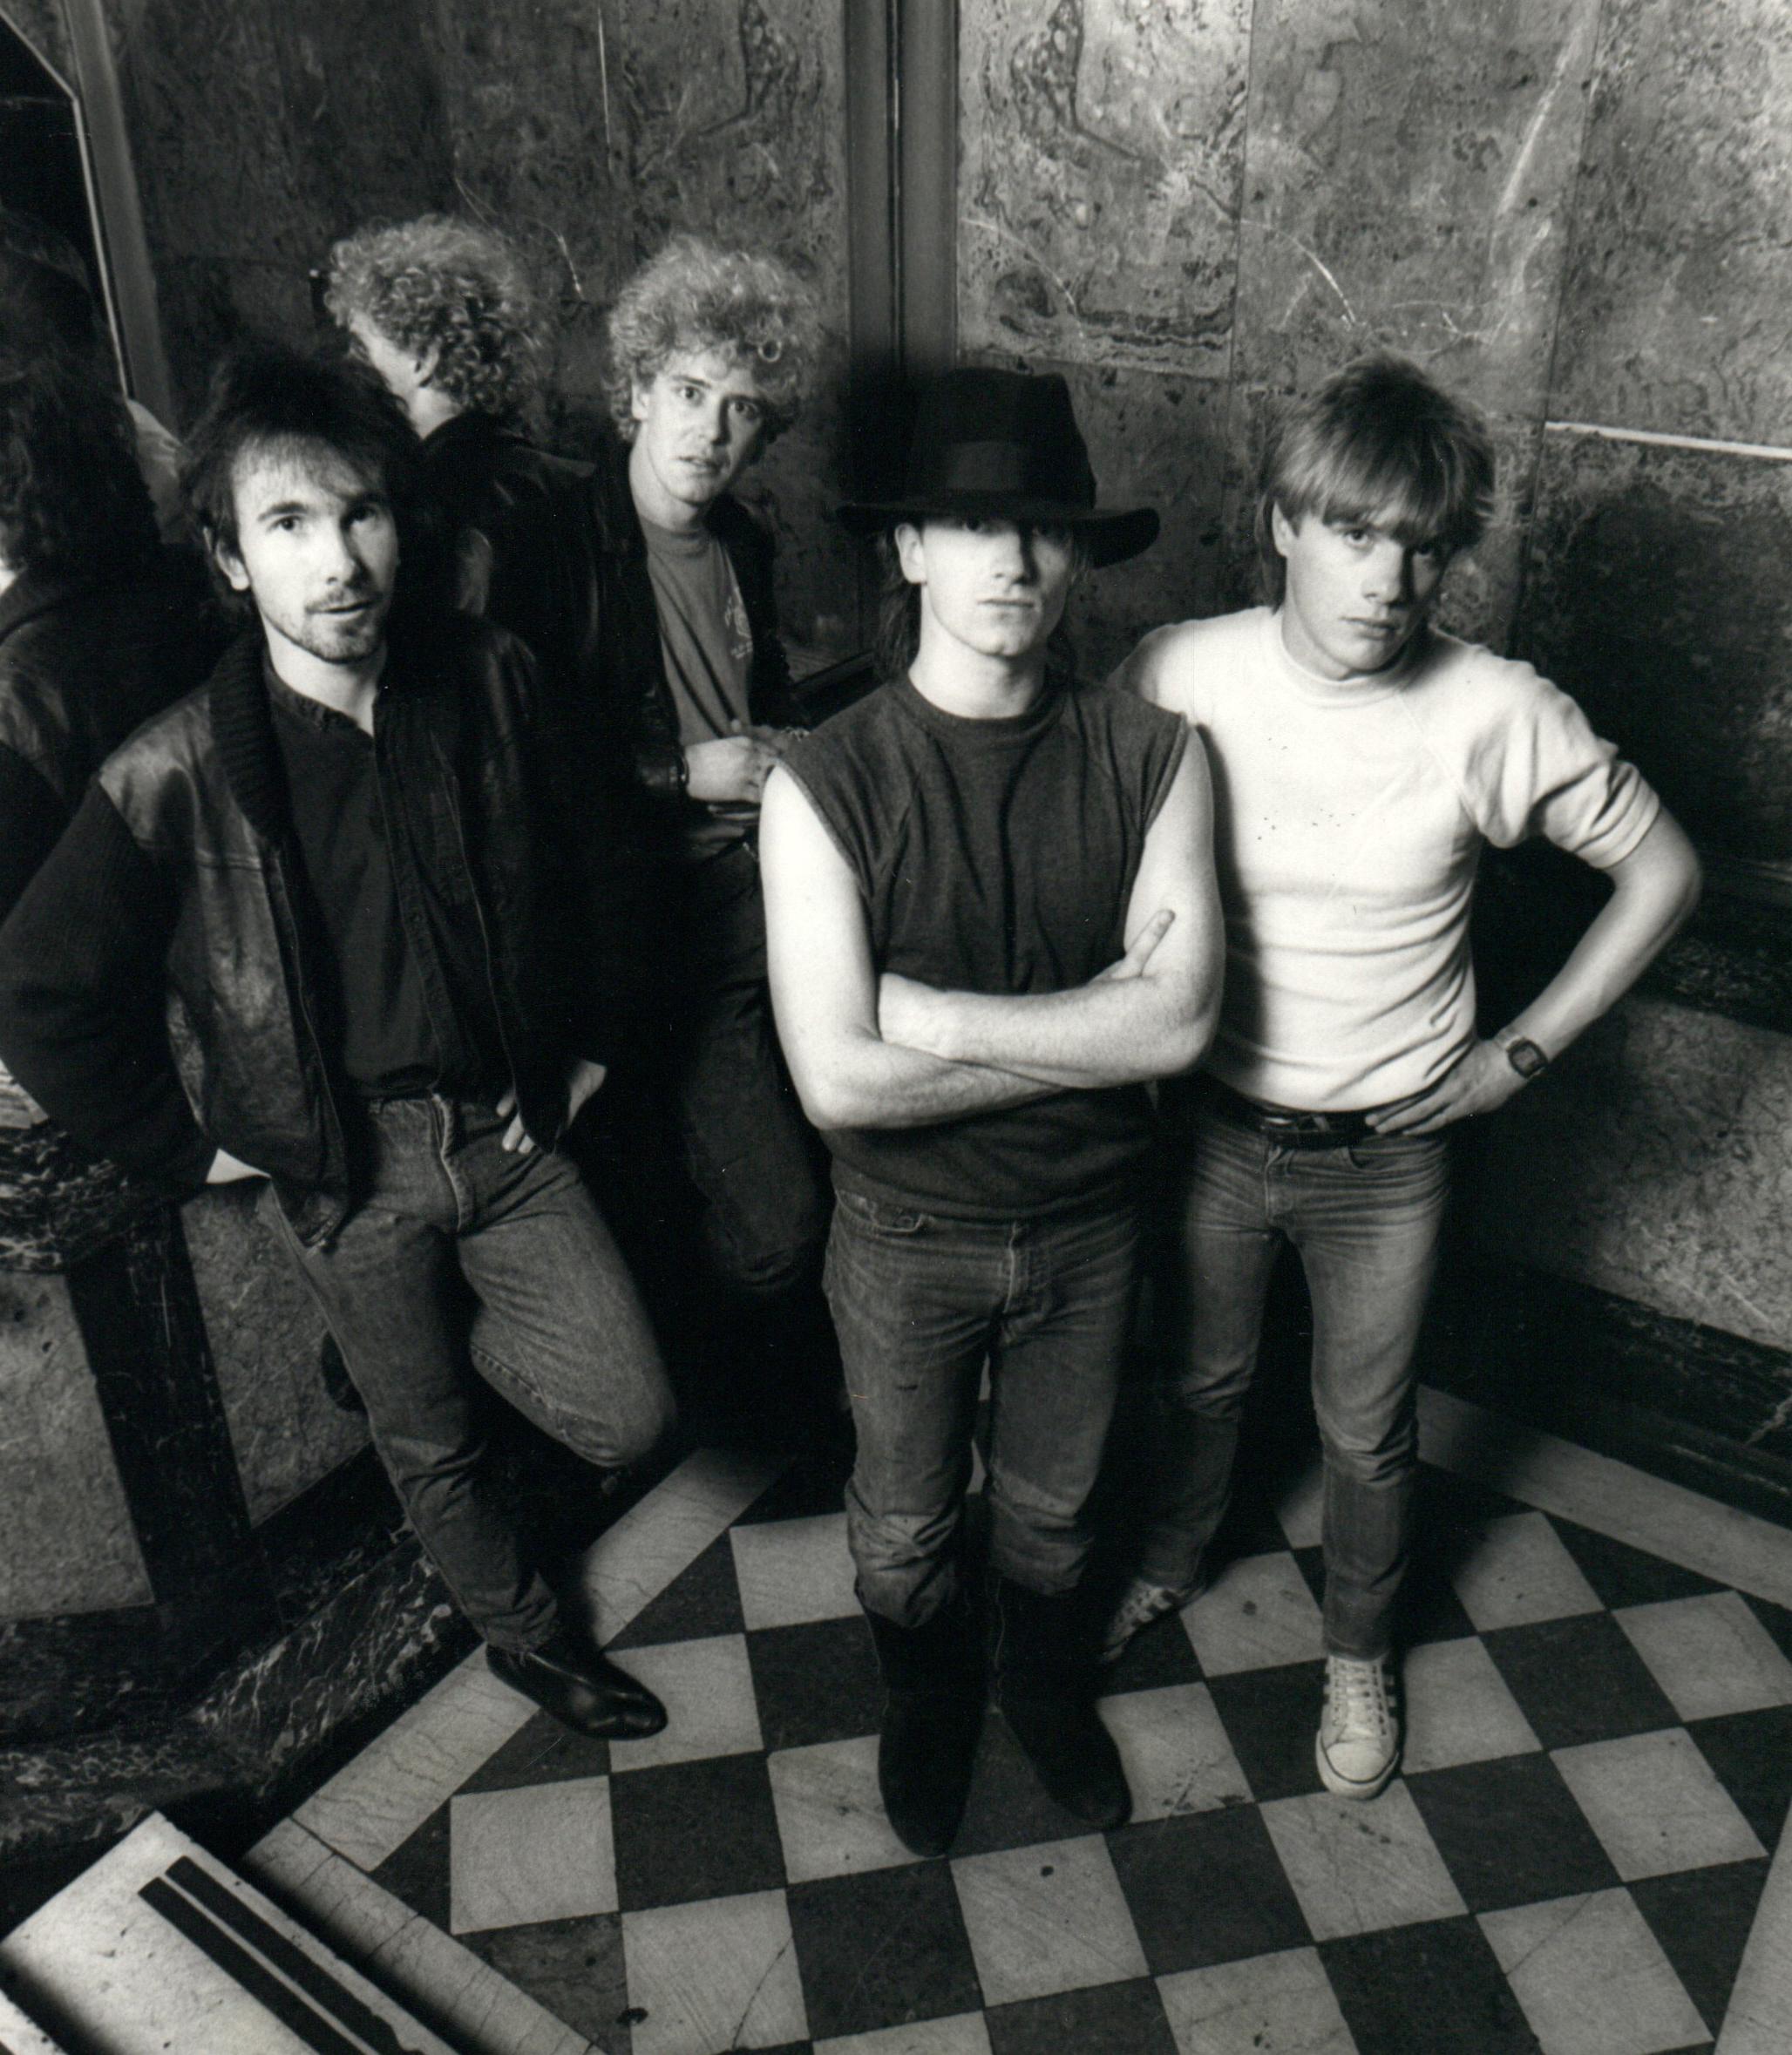 Paul McAlpine Black and White Photograph - U2 Group Portrait Vintage Original Photograph